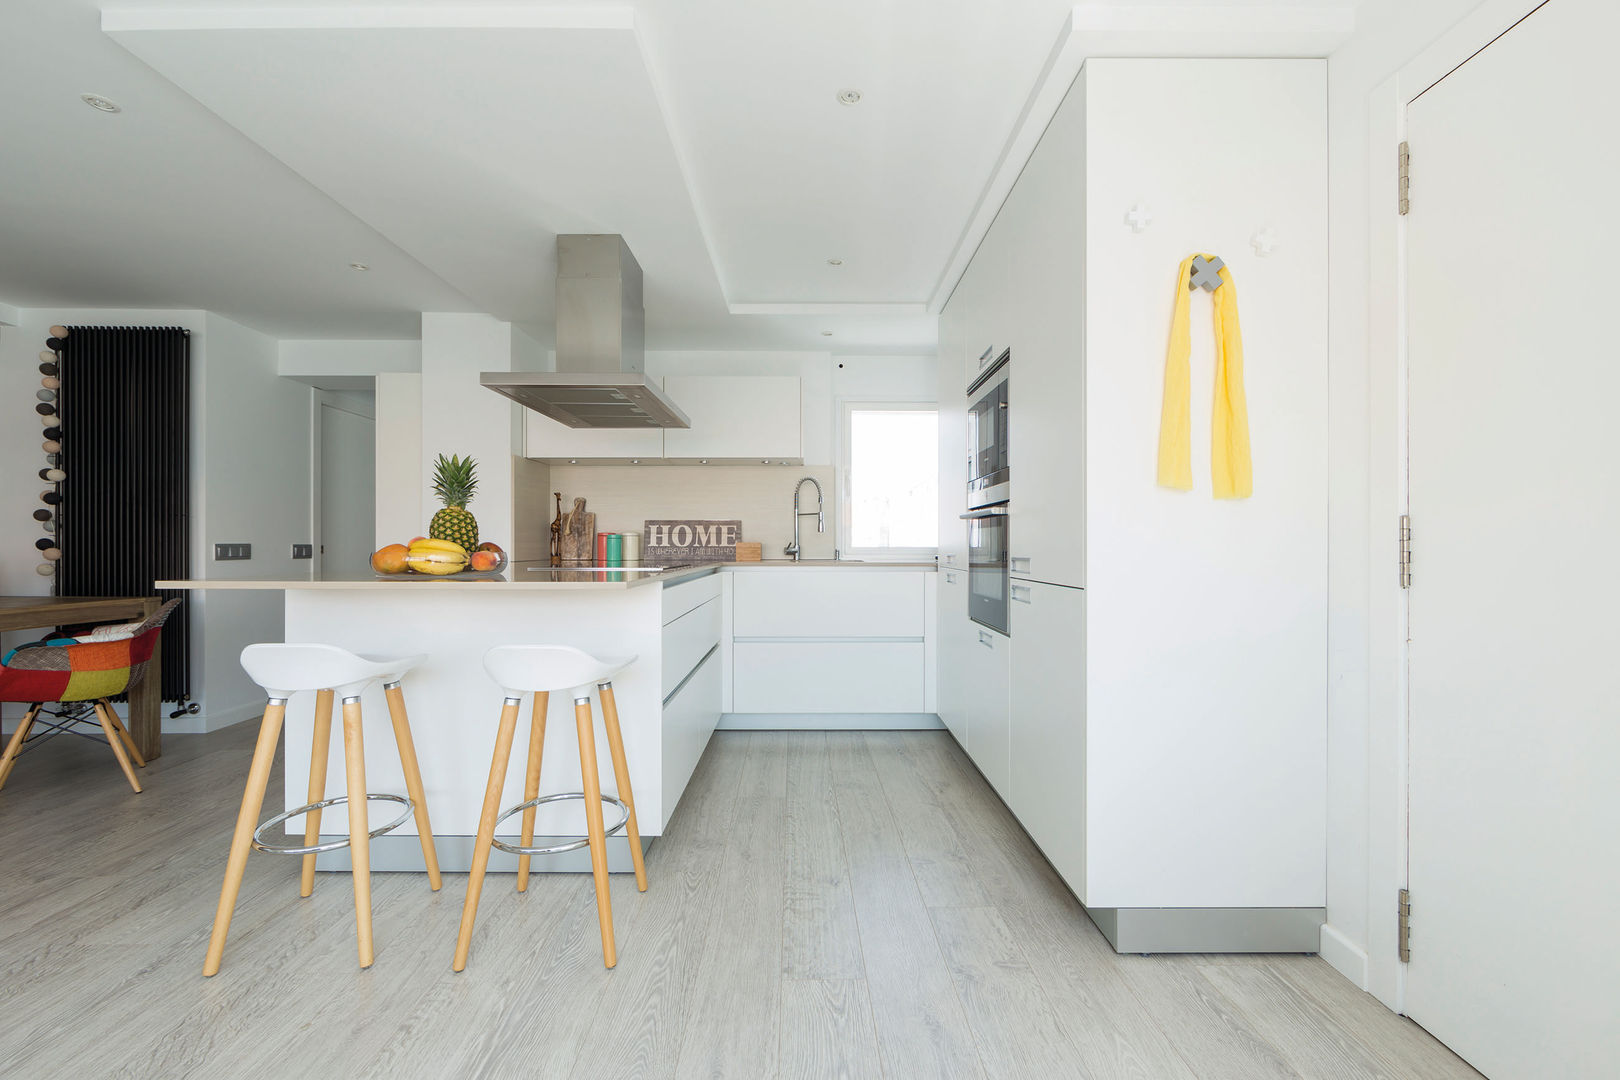 Una cocina blanca abierta al resto de la casa, Santiago Interiores - Cocinas Santos Santiago Interiores - Cocinas Santos Bếp xây sẵn